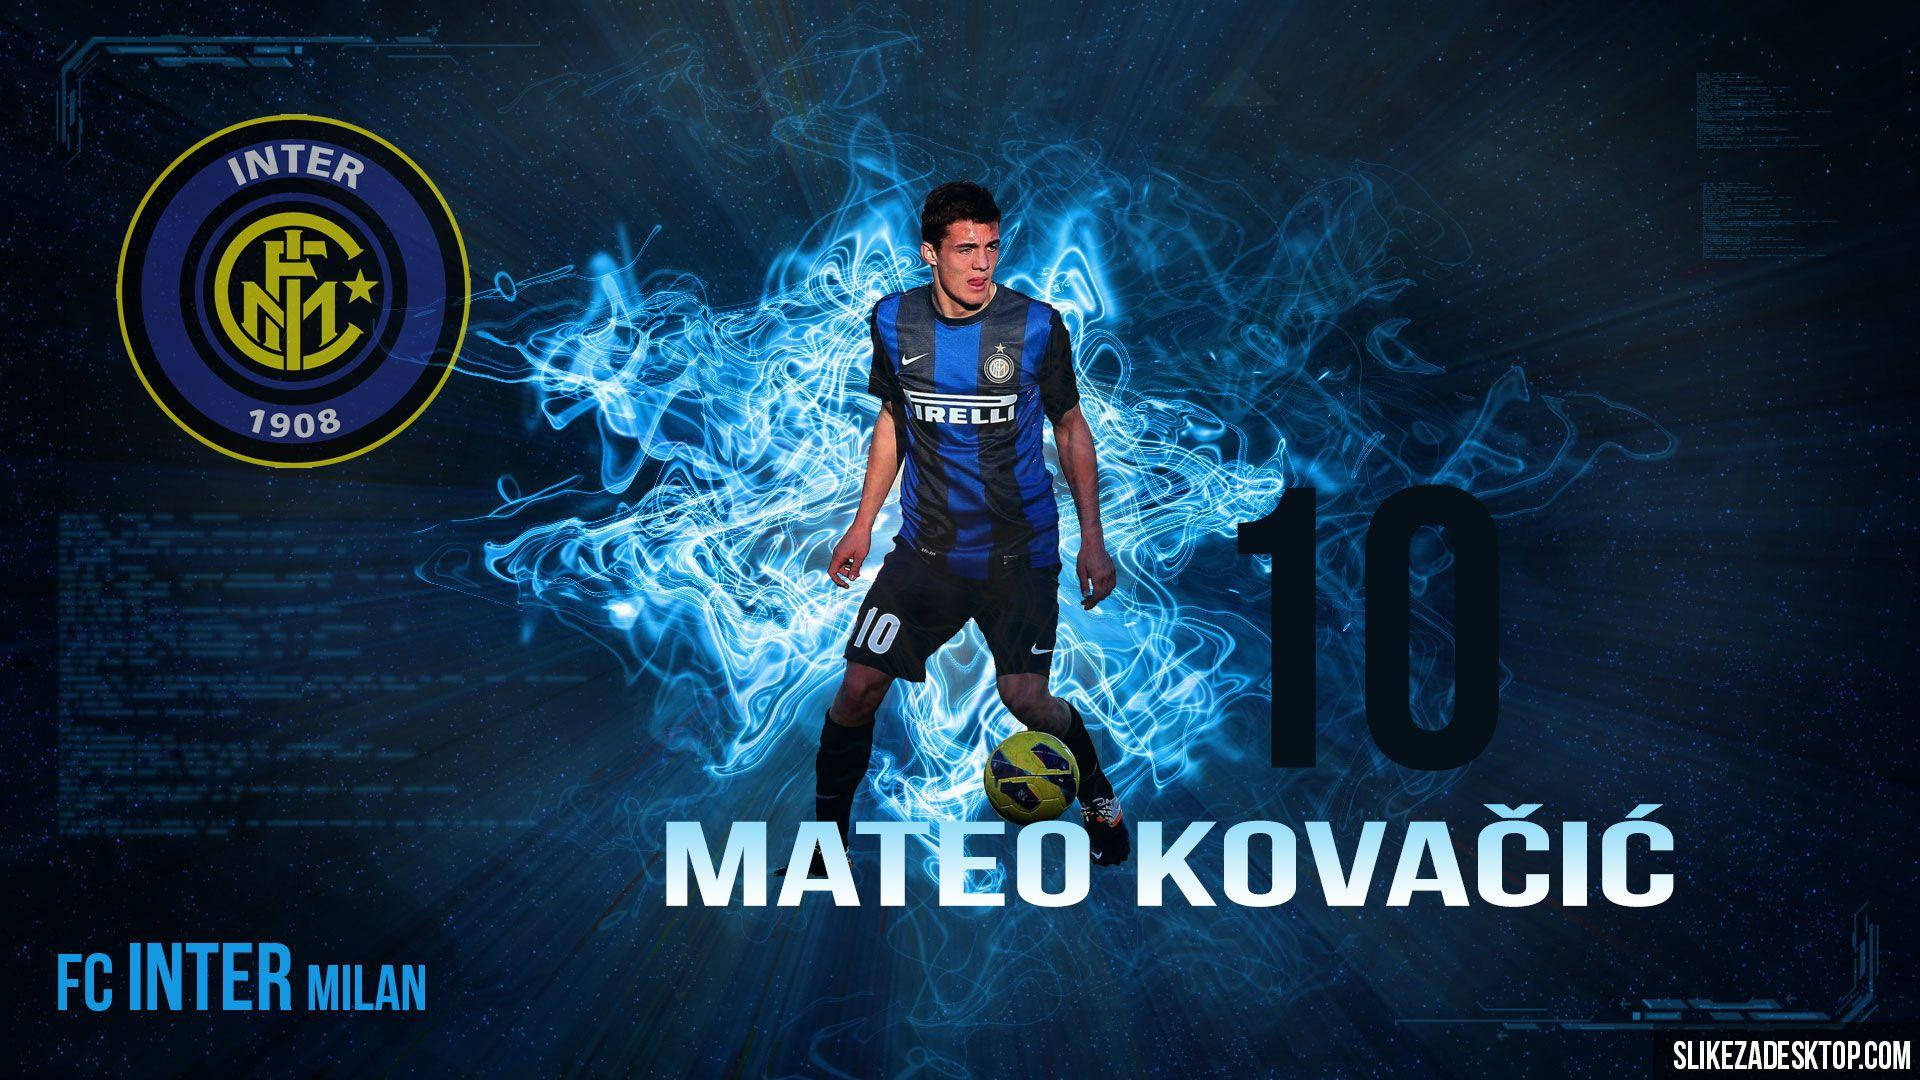 Mateo Kovacic Ice Blue Flame – Farven er en forheksende blå is ild. Wallpaper